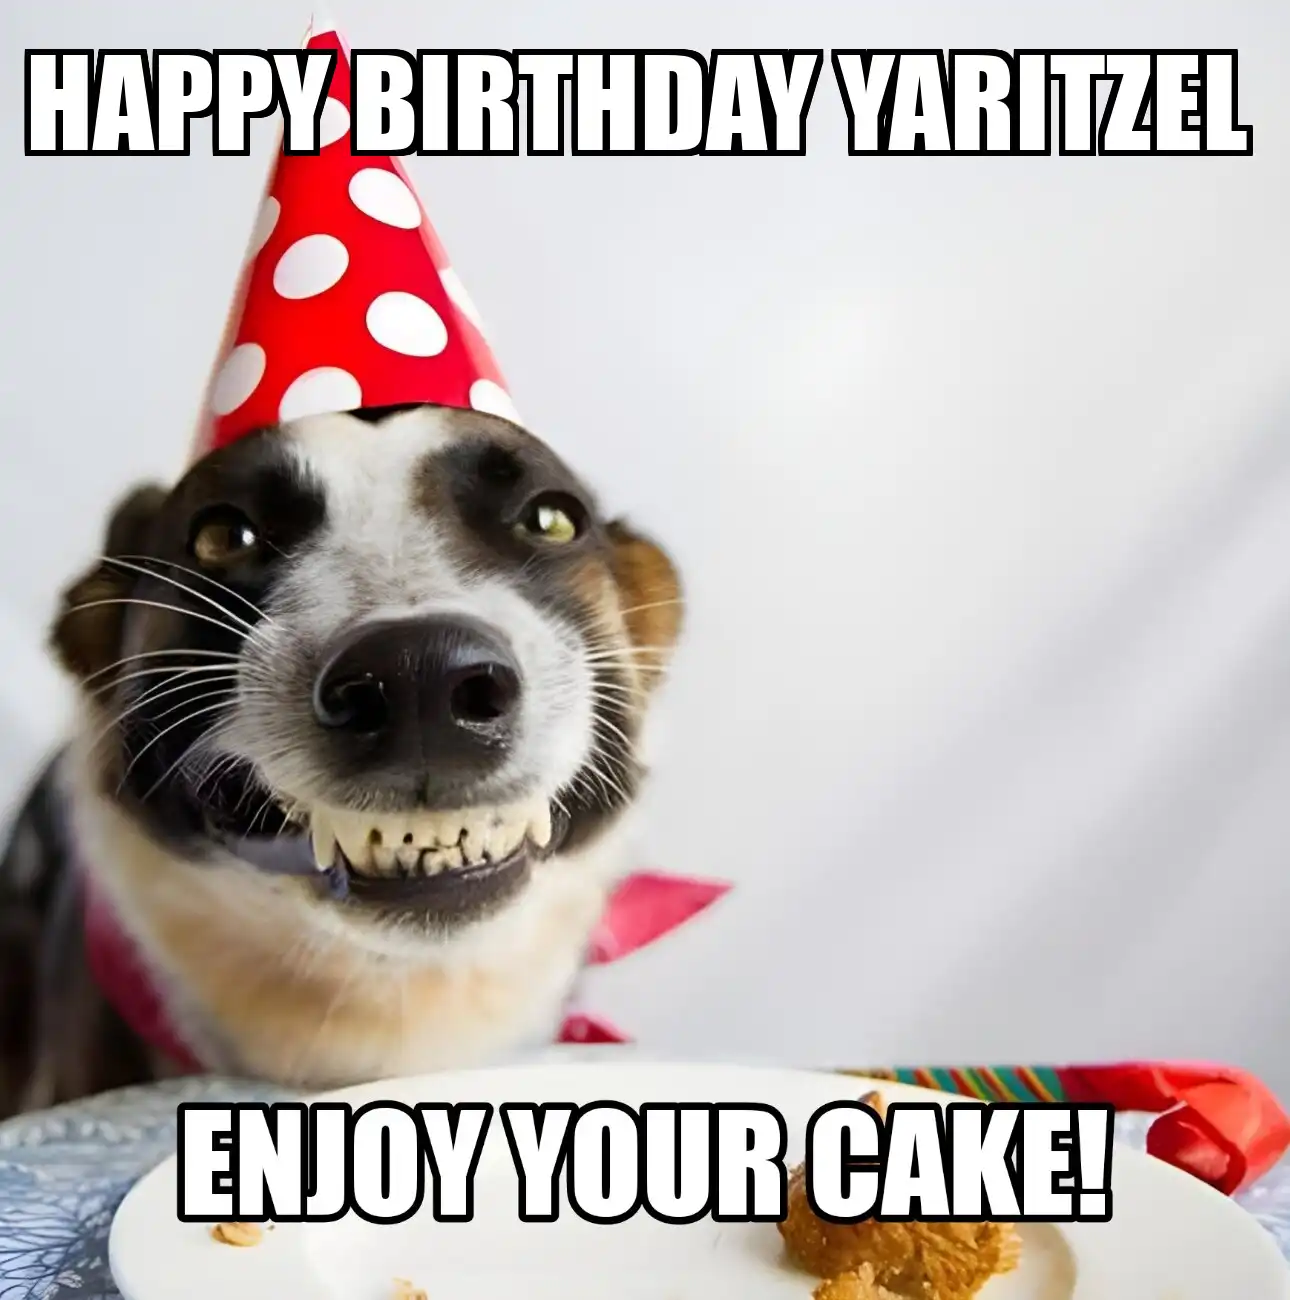 Happy Birthday Yaritzel Enjoy Your Cake Dog Meme